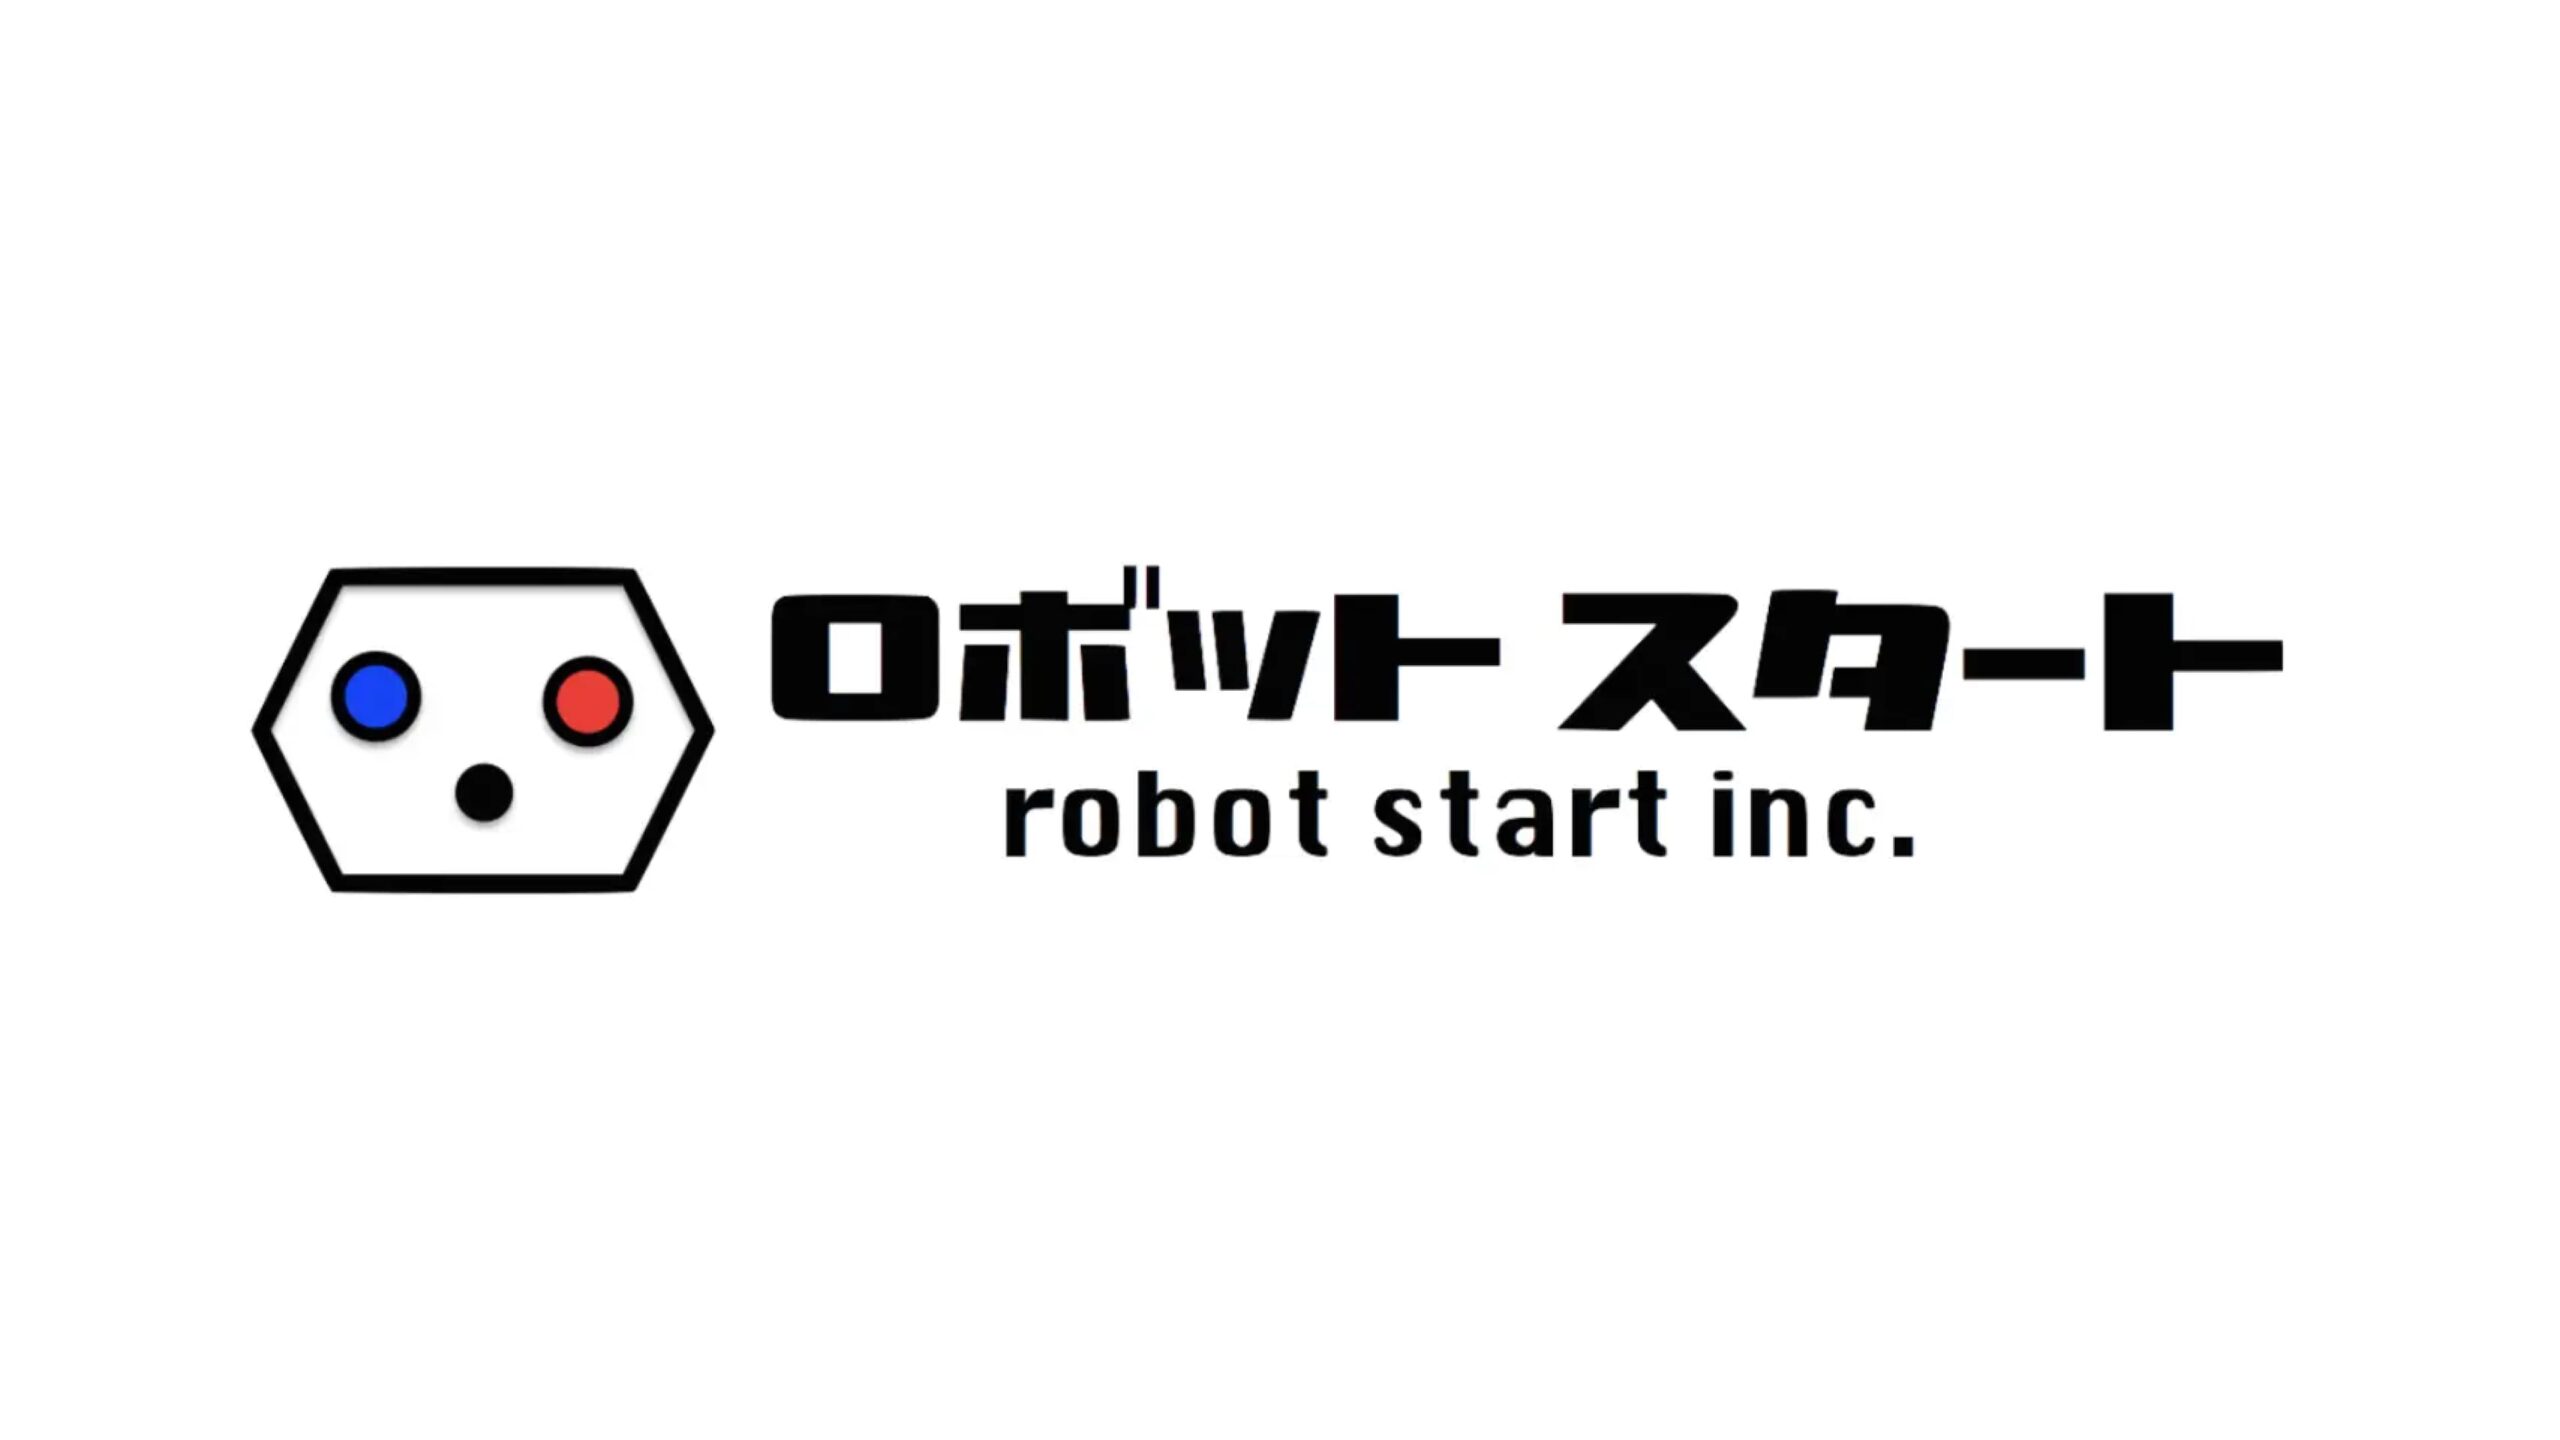 ロボットスタート株式会社がシリーズAの資金調達を完了し、累計調達額は4.6億円超に